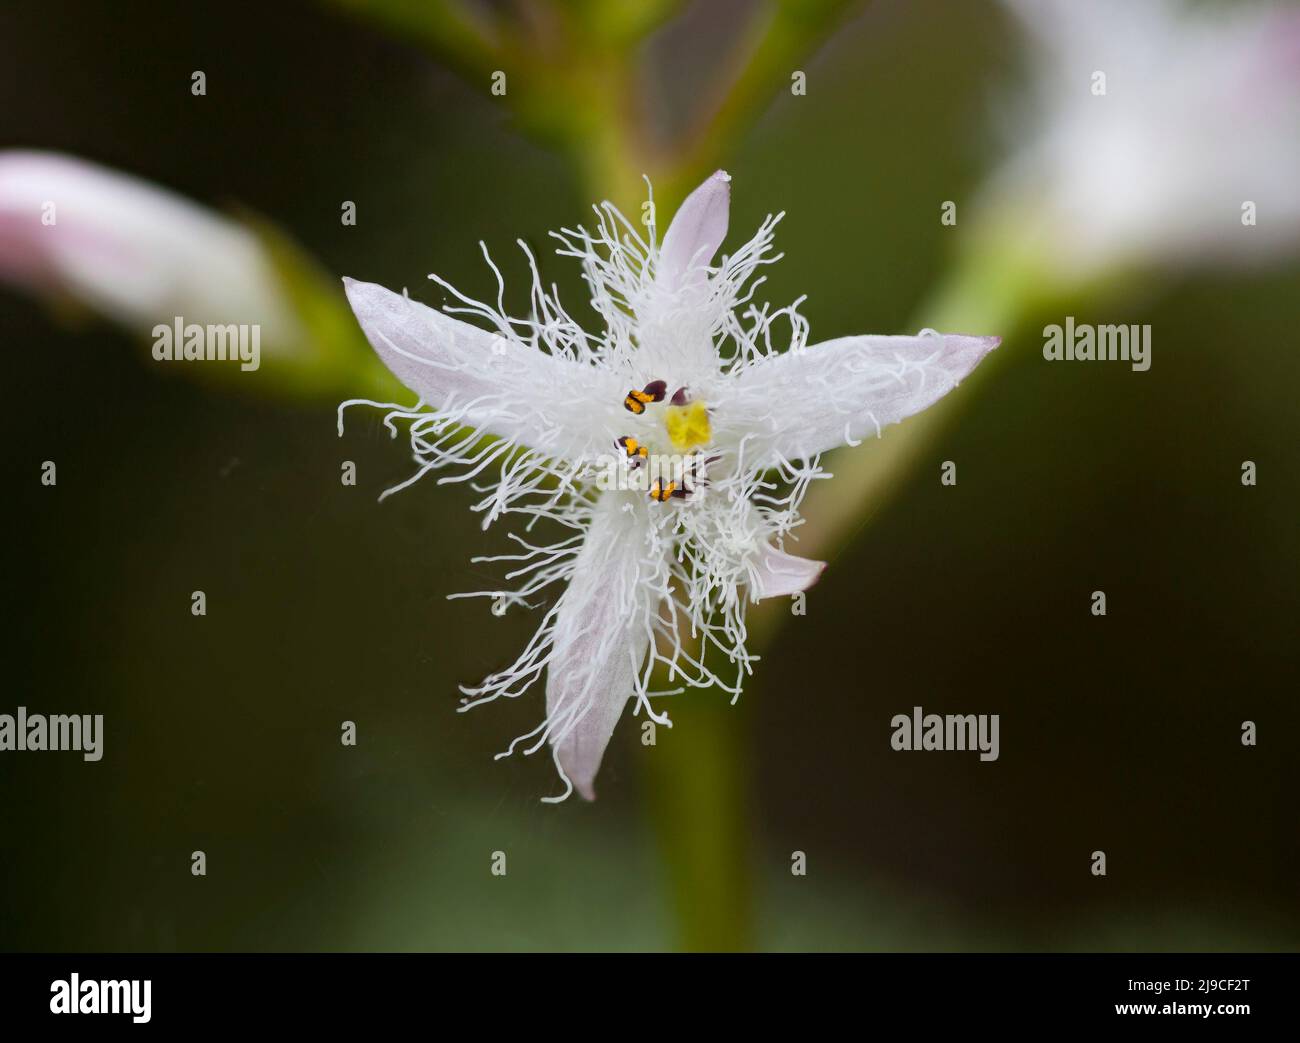 Teichpflanze, Bogbean, Menyanthes trifoliata, weiße haarige Blume Stockfoto